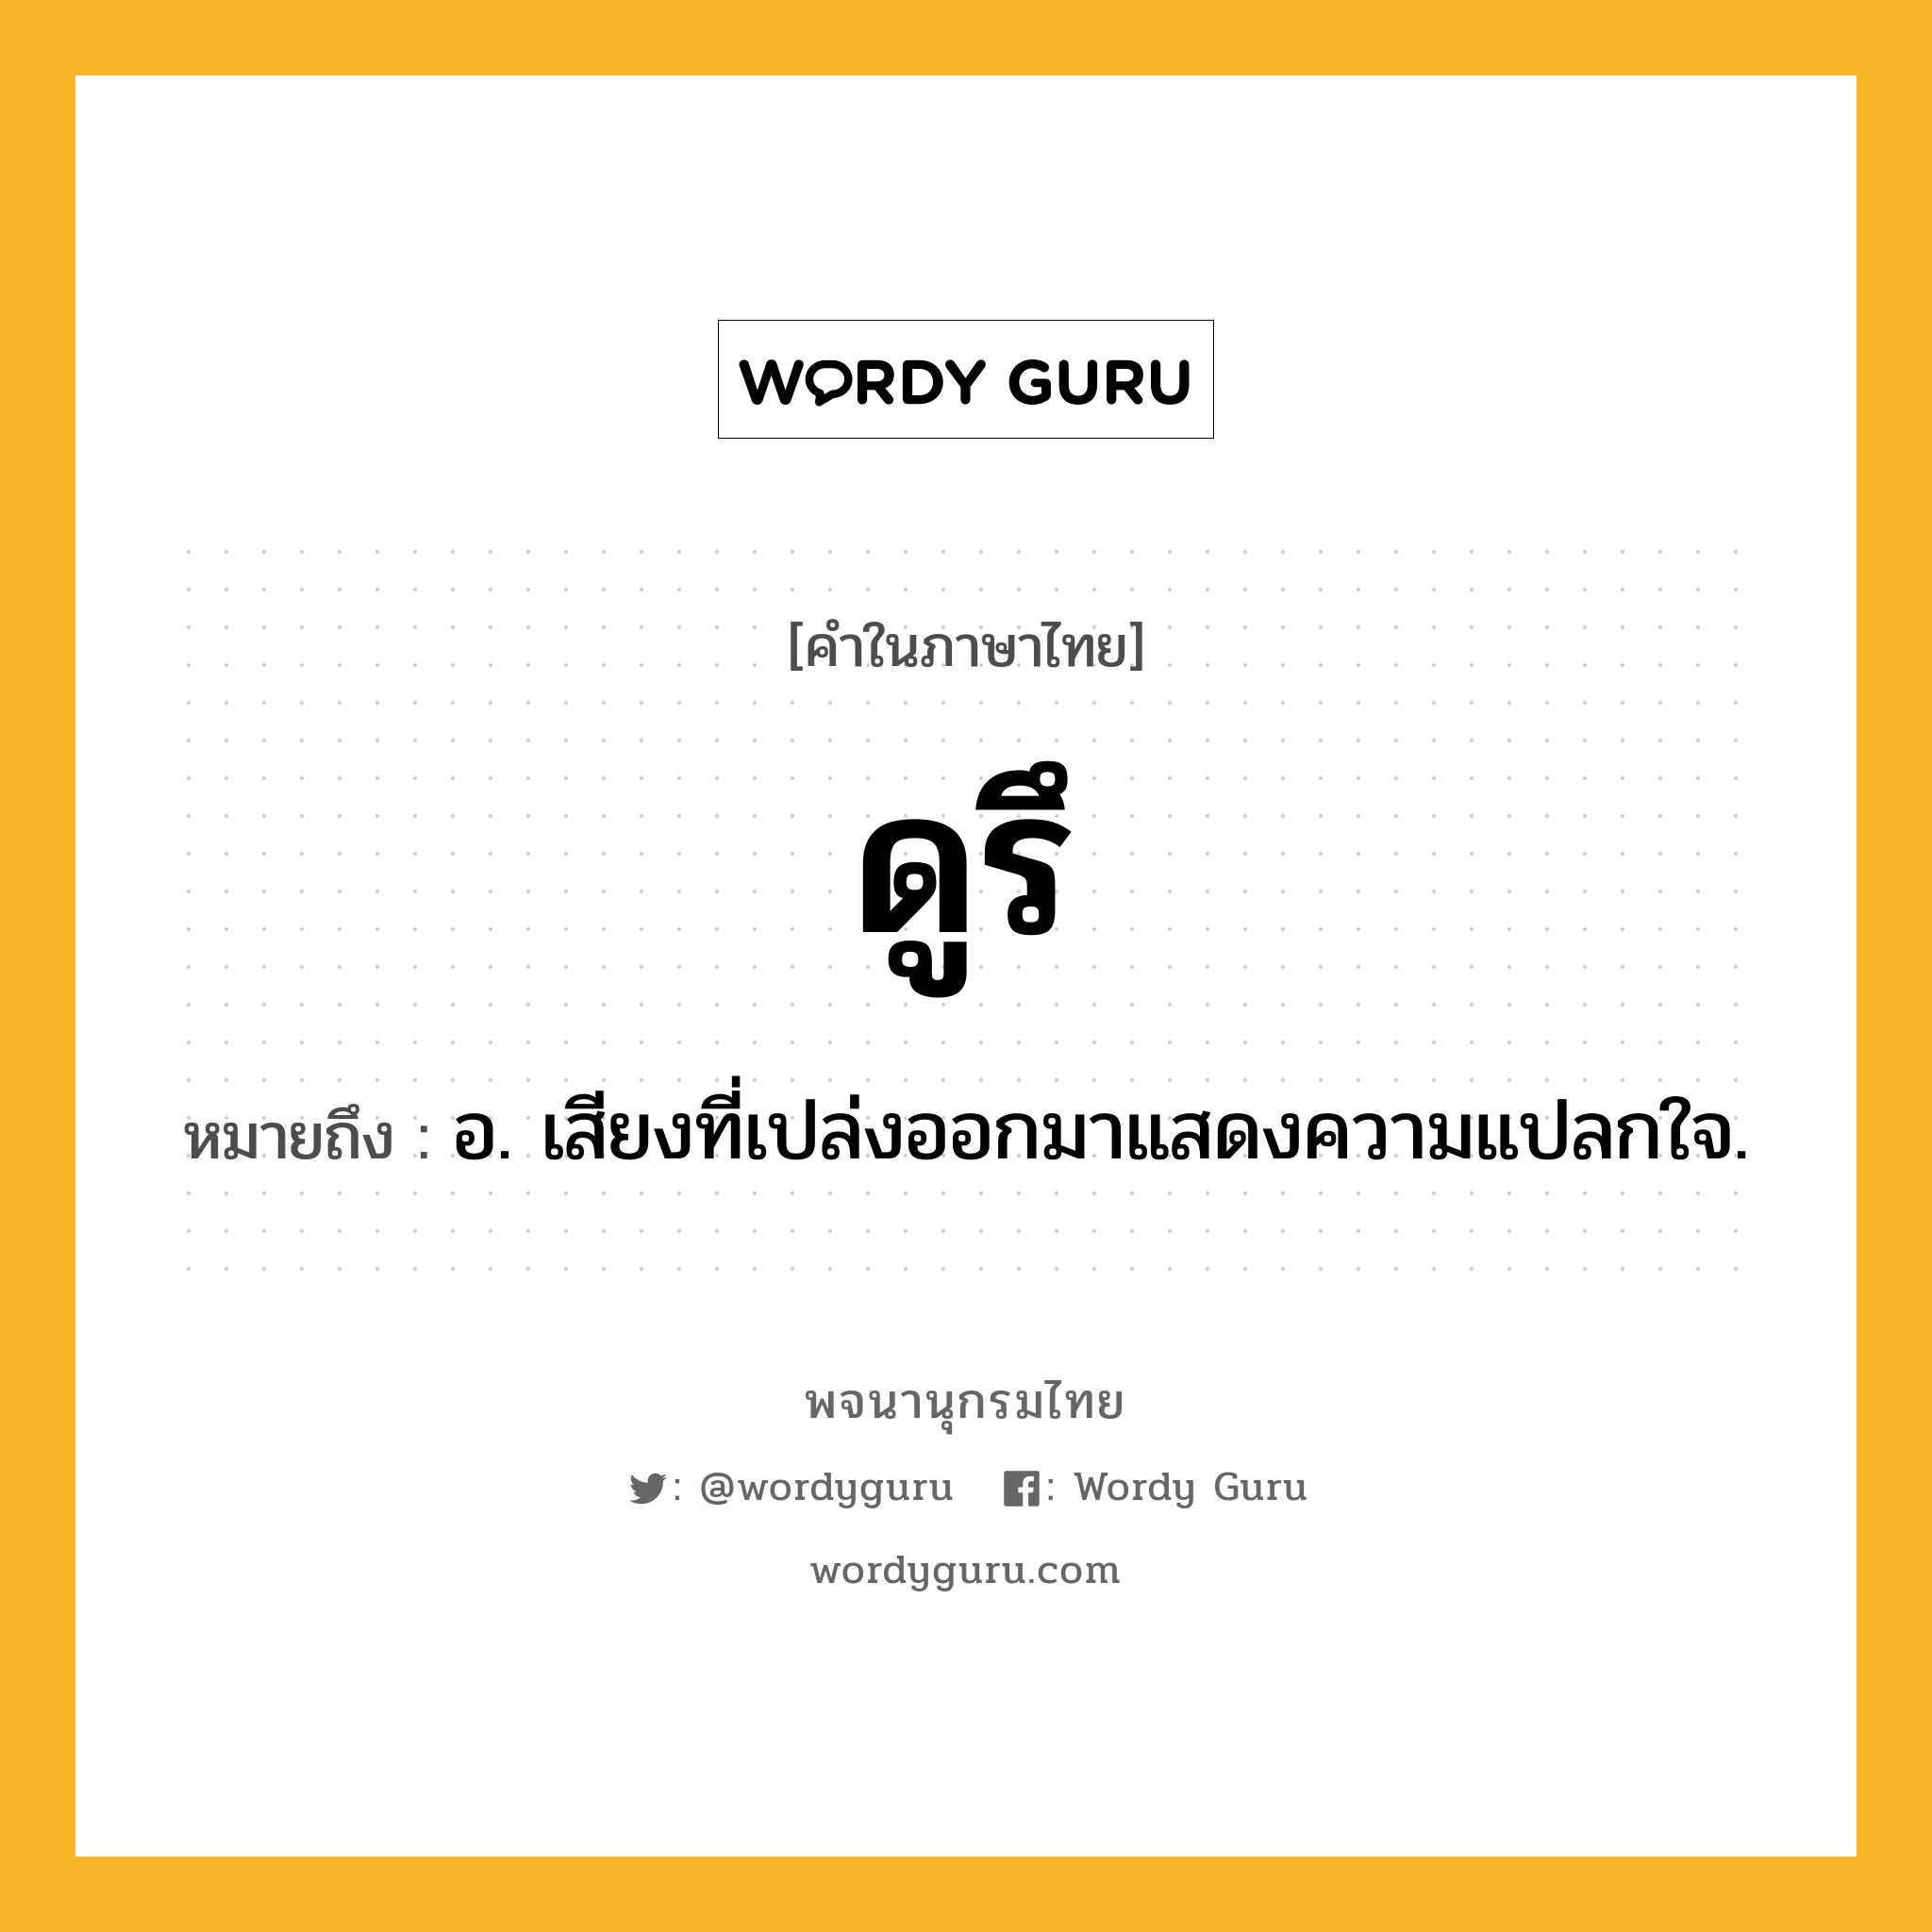 ดูรึ หมายถึงอะไร?, คำในภาษาไทย ดูรึ หมายถึง อ. เสียงที่เปล่งออกมาแสดงความแปลกใจ.